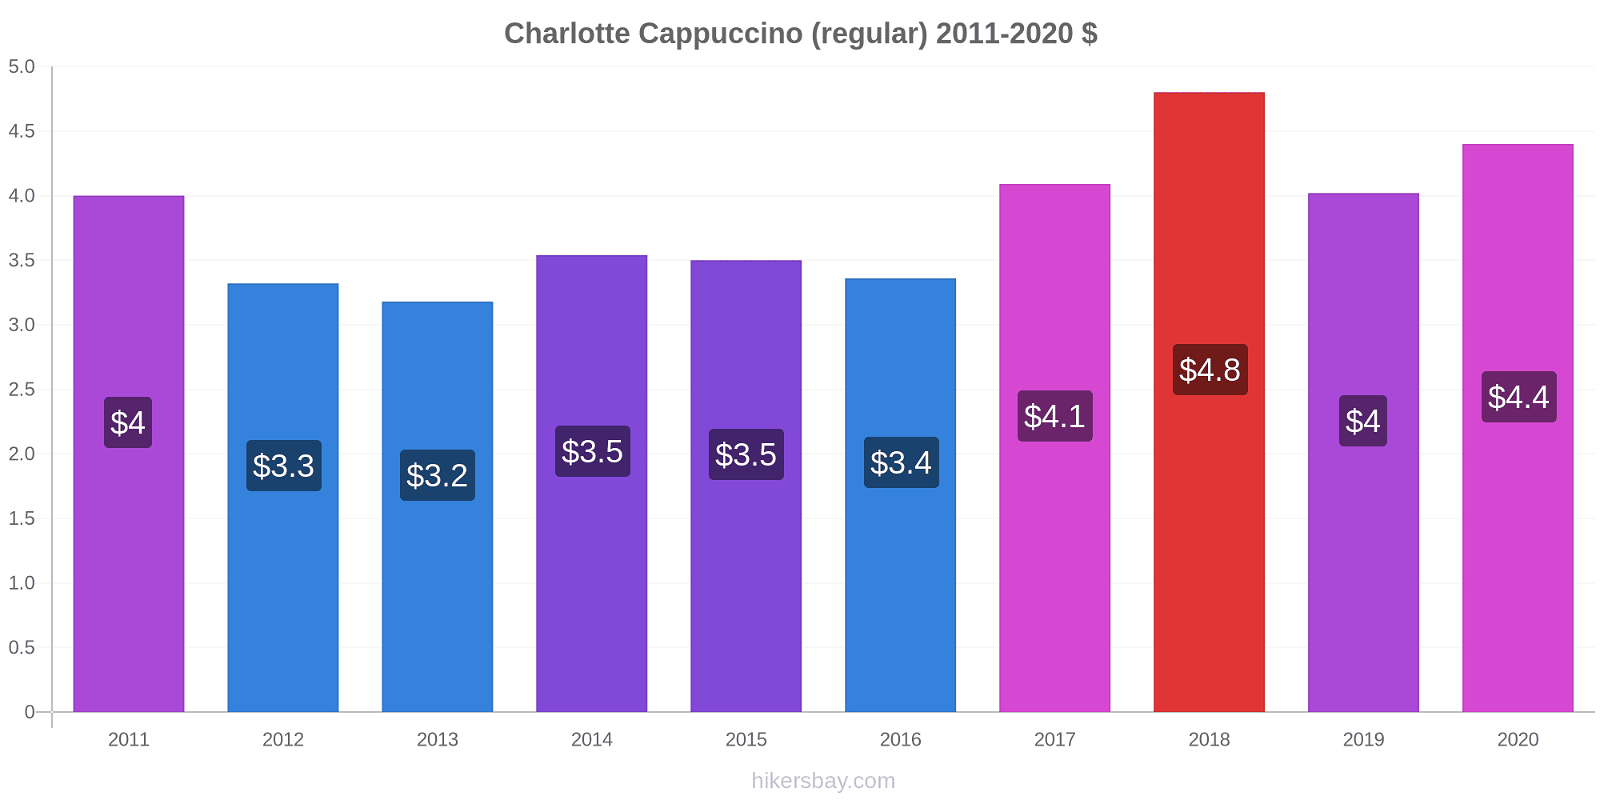 Charlotte price changes Cappuccino (regular) hikersbay.com